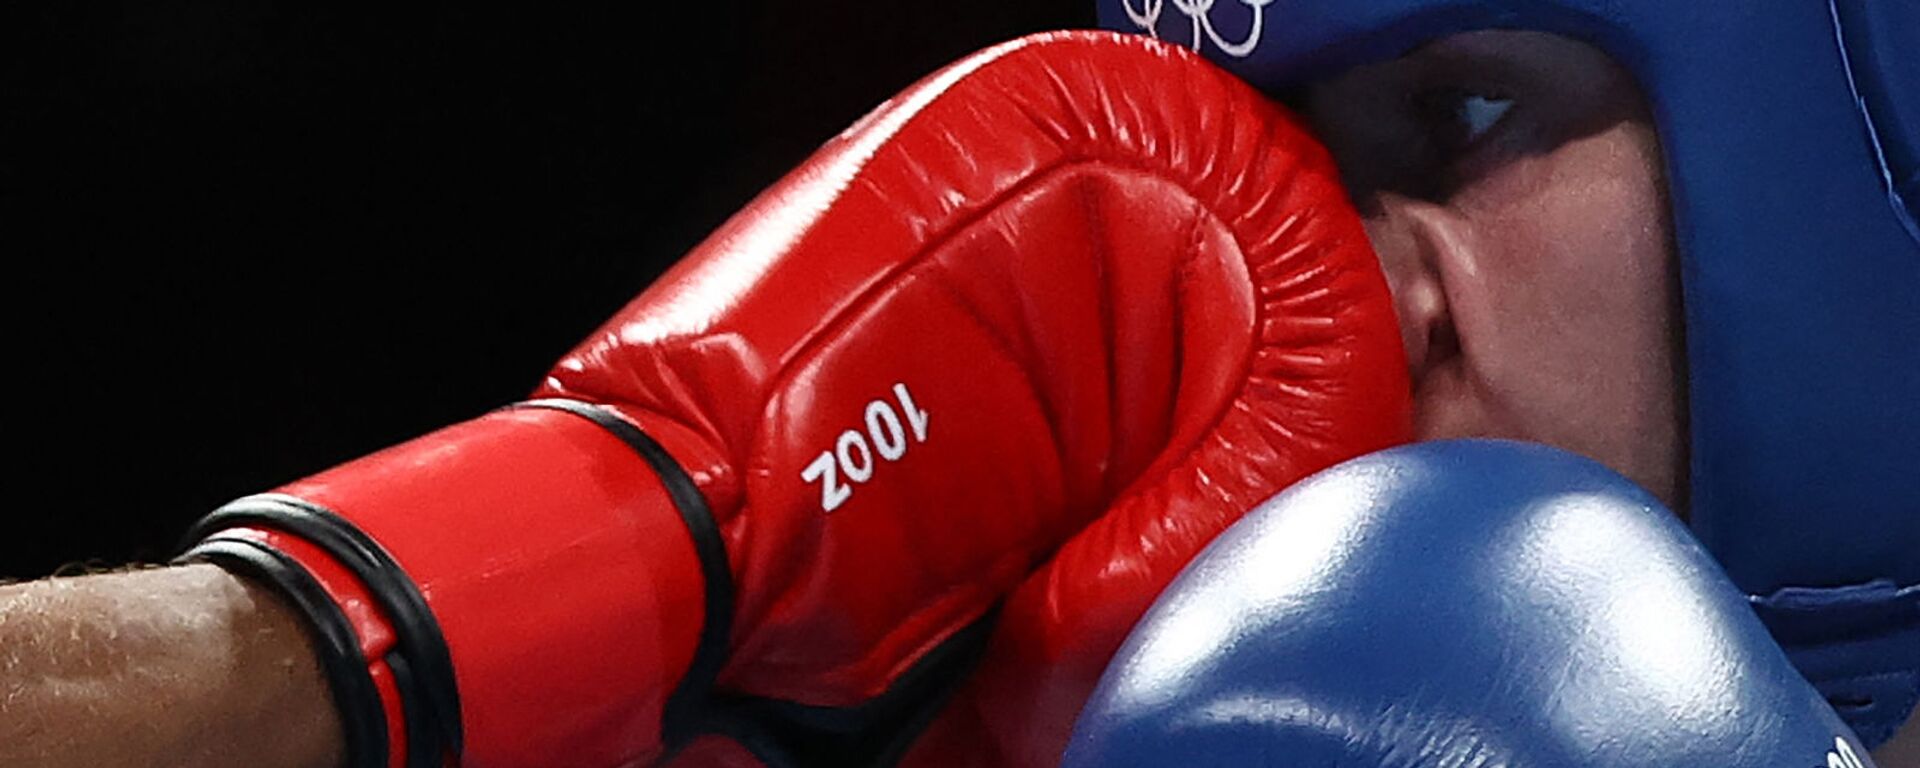 Удар в лицо боксерской перчаткой во время поединка  среди женщин на Олимпийских игрех в Токио - Sputnik Արմենիա, 1920, 26.11.2021